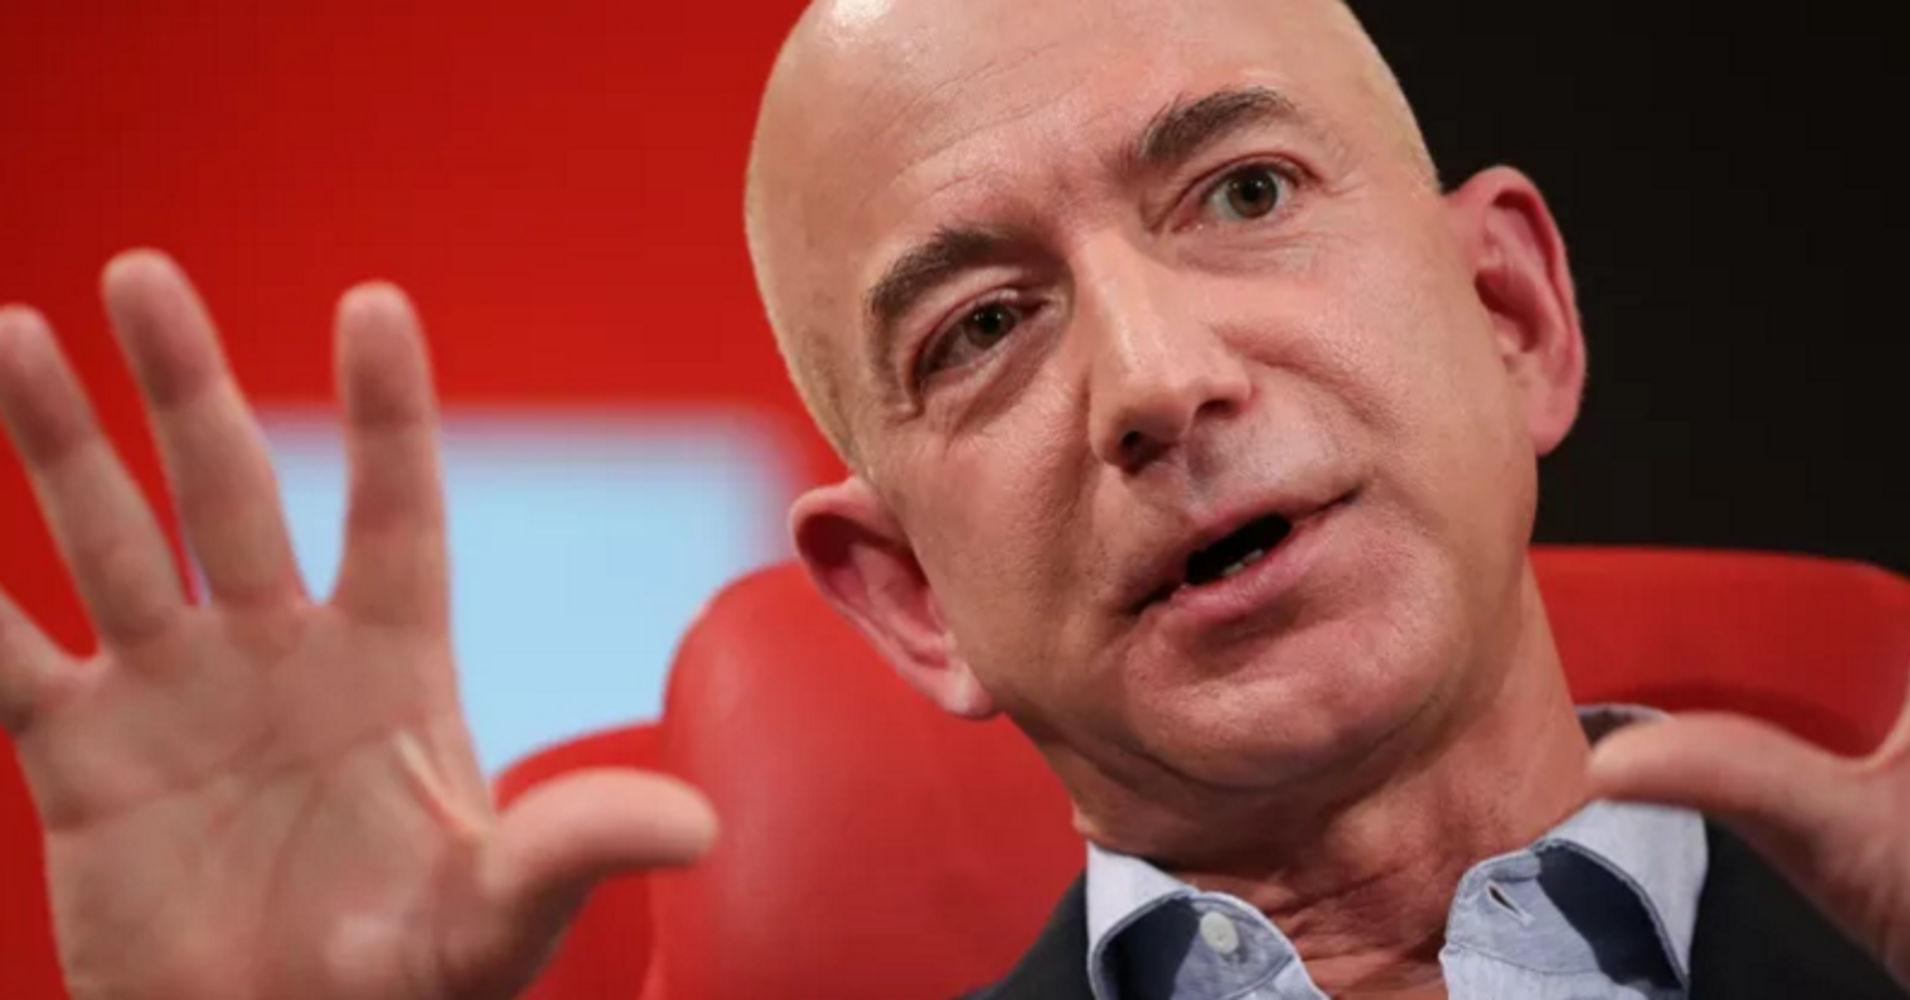 Tỷ phú Jeff Bezos và 12 câu hỏi khiến bạn suy ngẫm về những lựa chọn trong cuộc sống